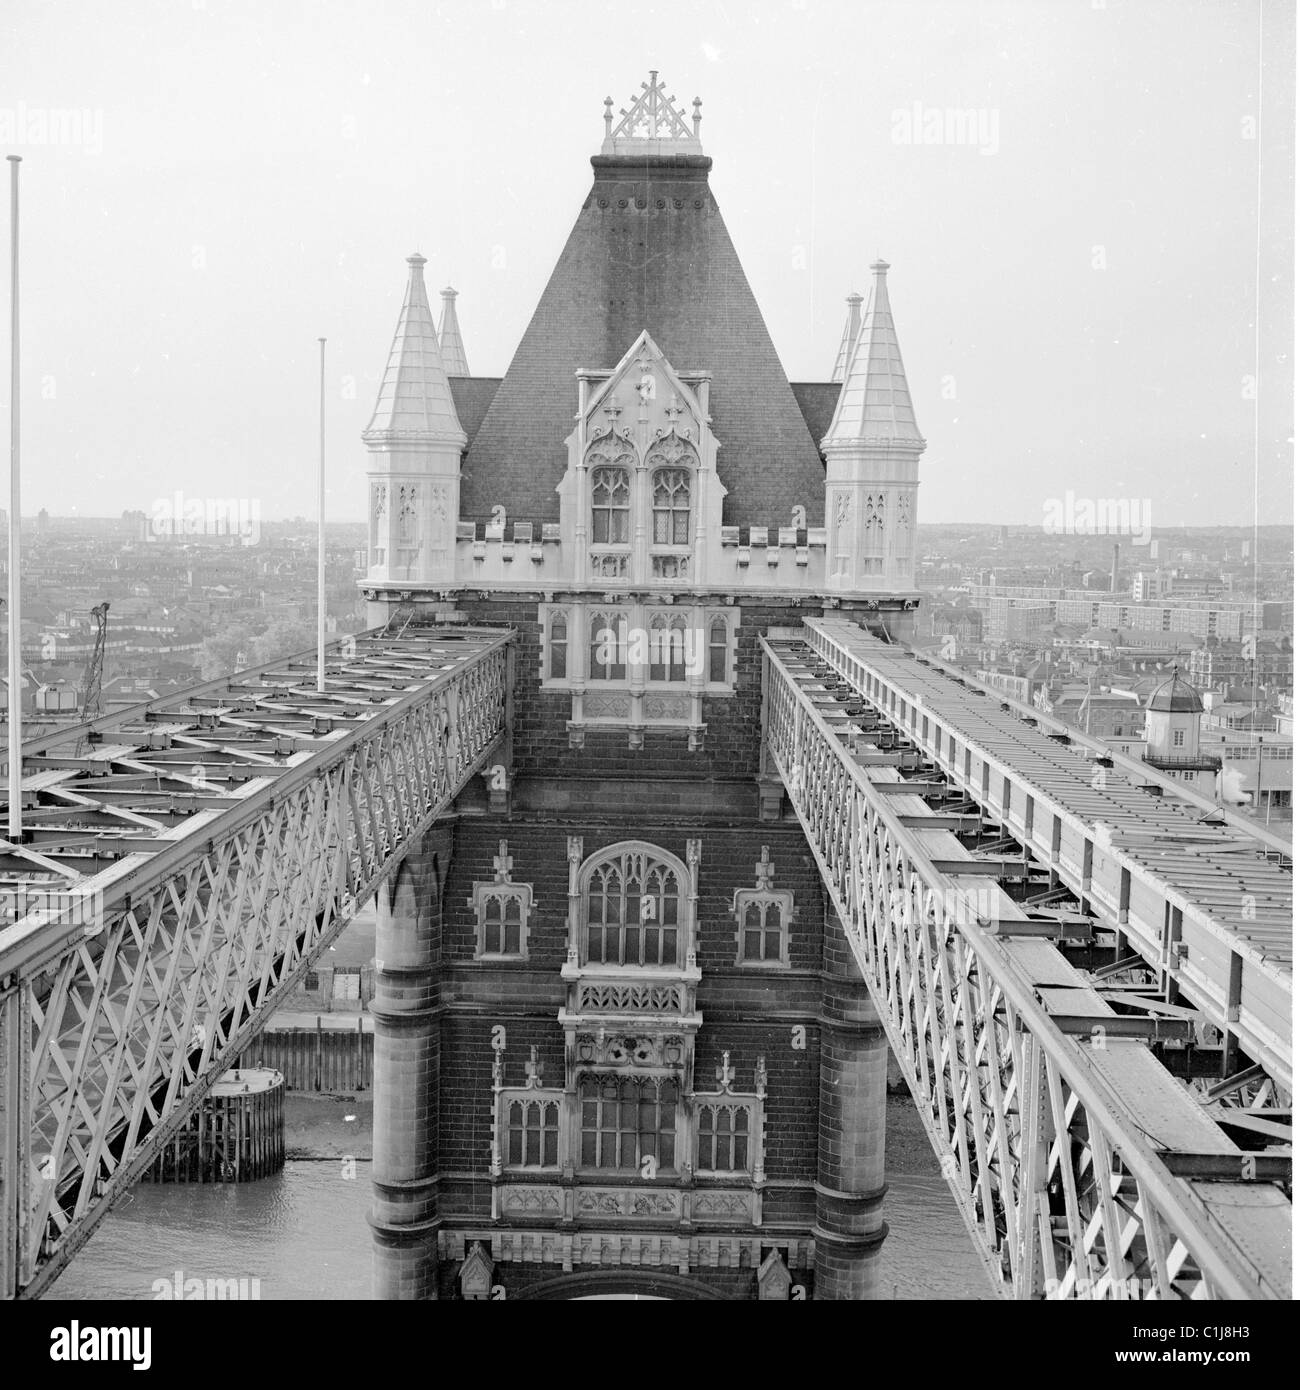 Années 1950, au sommet du Tower Bridge au-dessus de la Tamise, Londres, montrant les deux passerelles horizontales reliant l'une des deux tours gothiques du pont. Banque D'Images